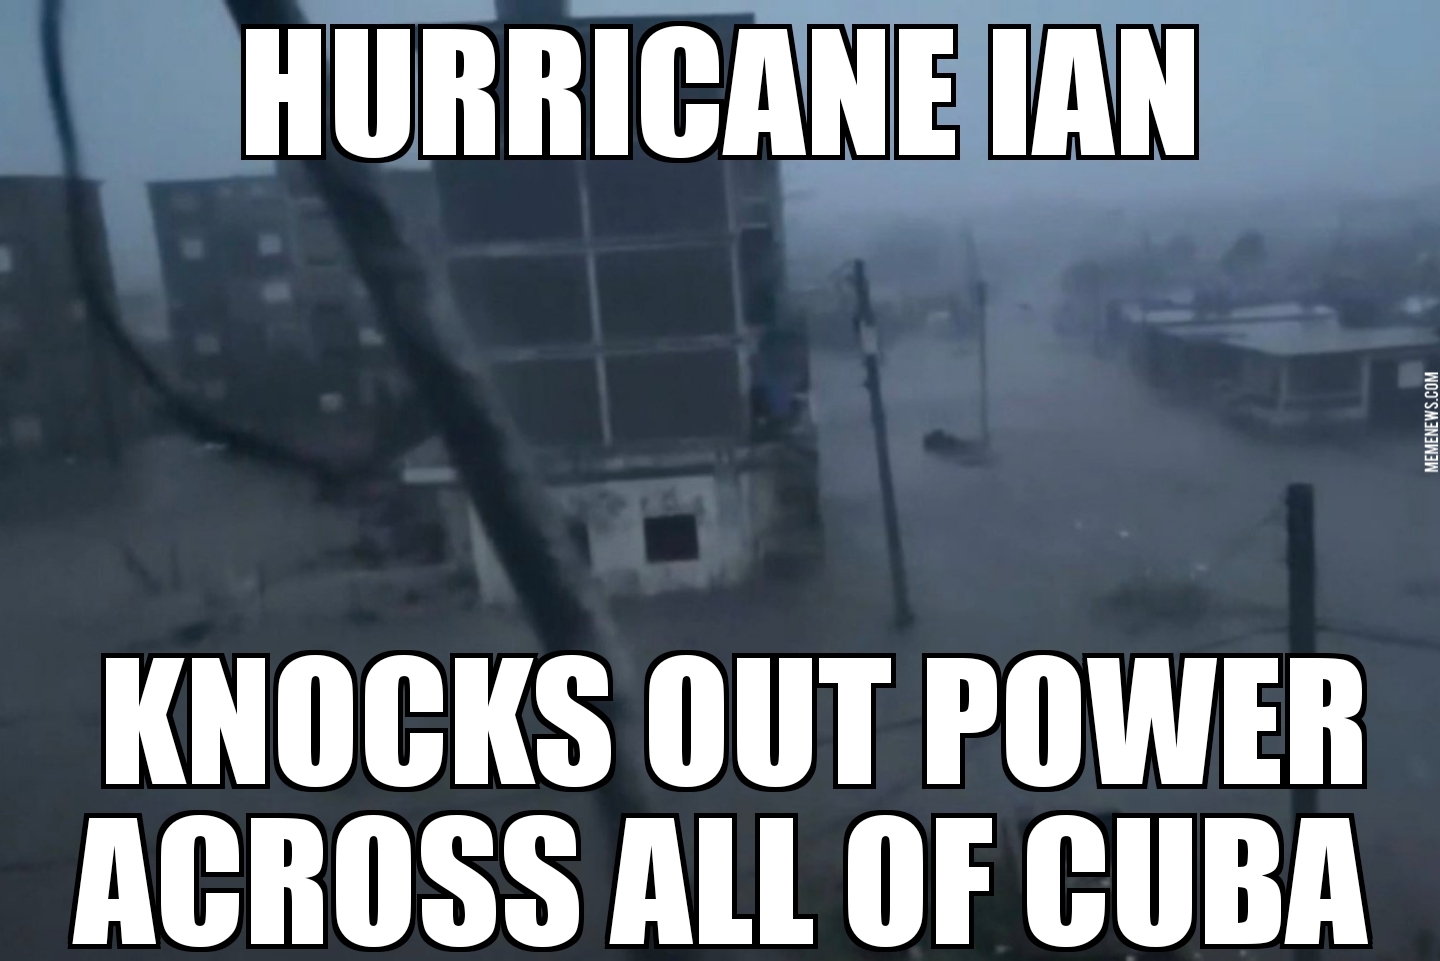 Ian cuts Cuba power